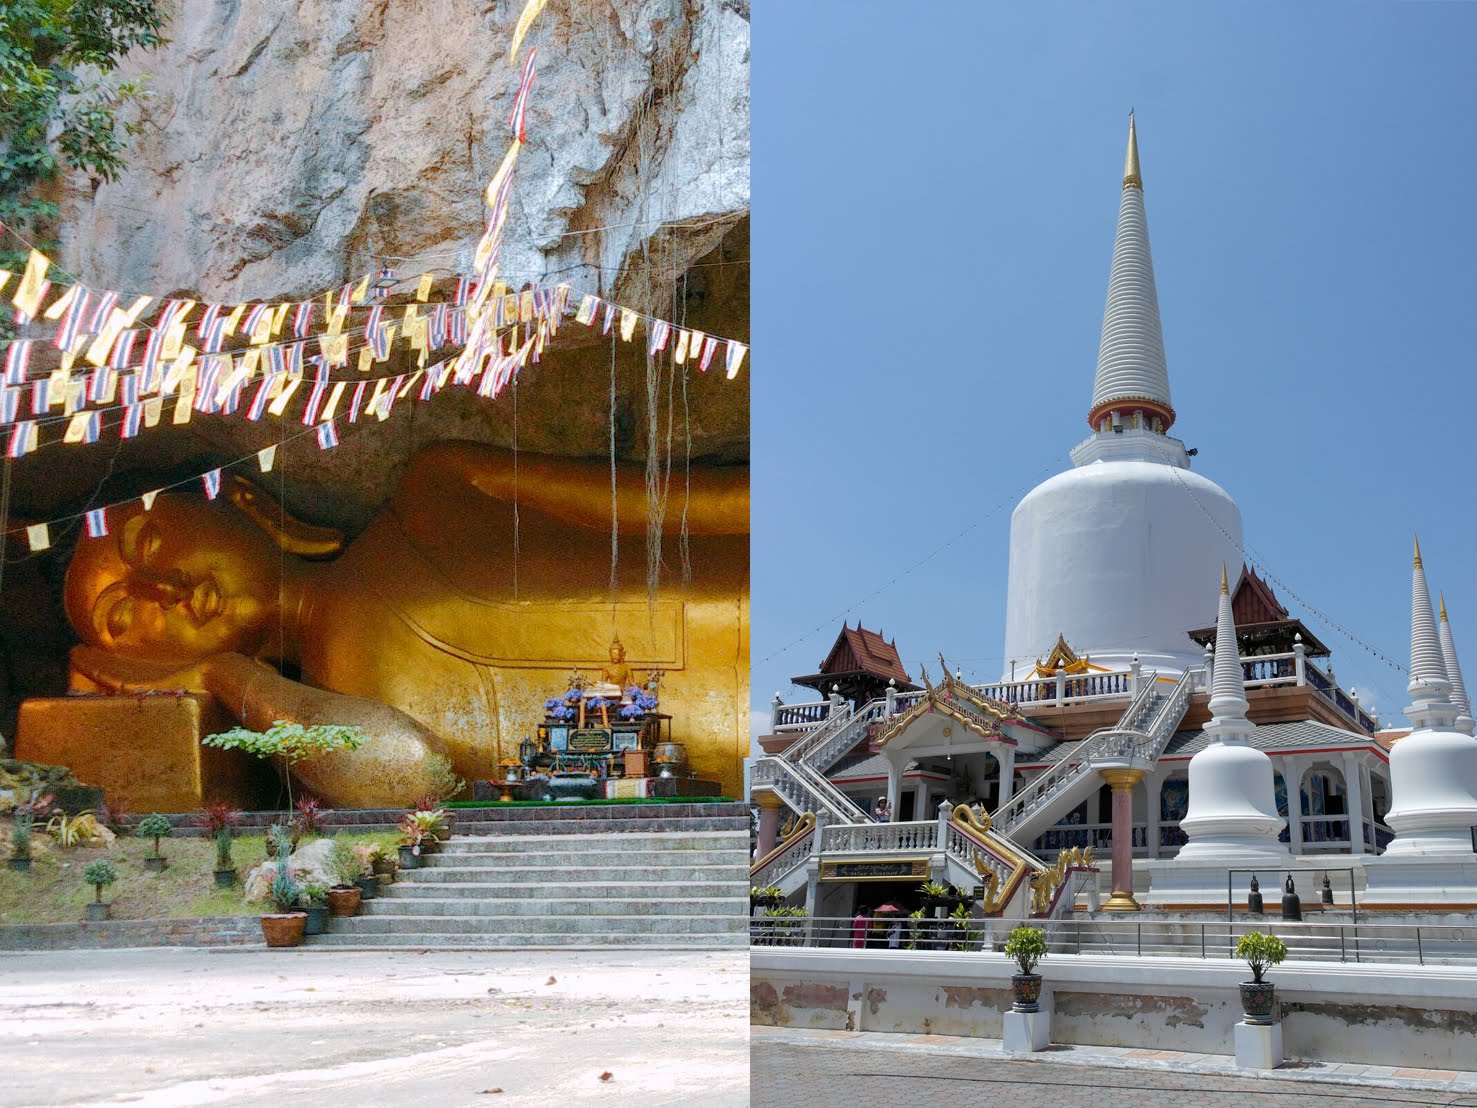 ทริปไฮไลท์เมืองนคร - วัดถ้ำทองพรรณรา - วัดธาตุน้อย พ่อท่านคล้าย (Wat T้hamThong Pannara - Wat That